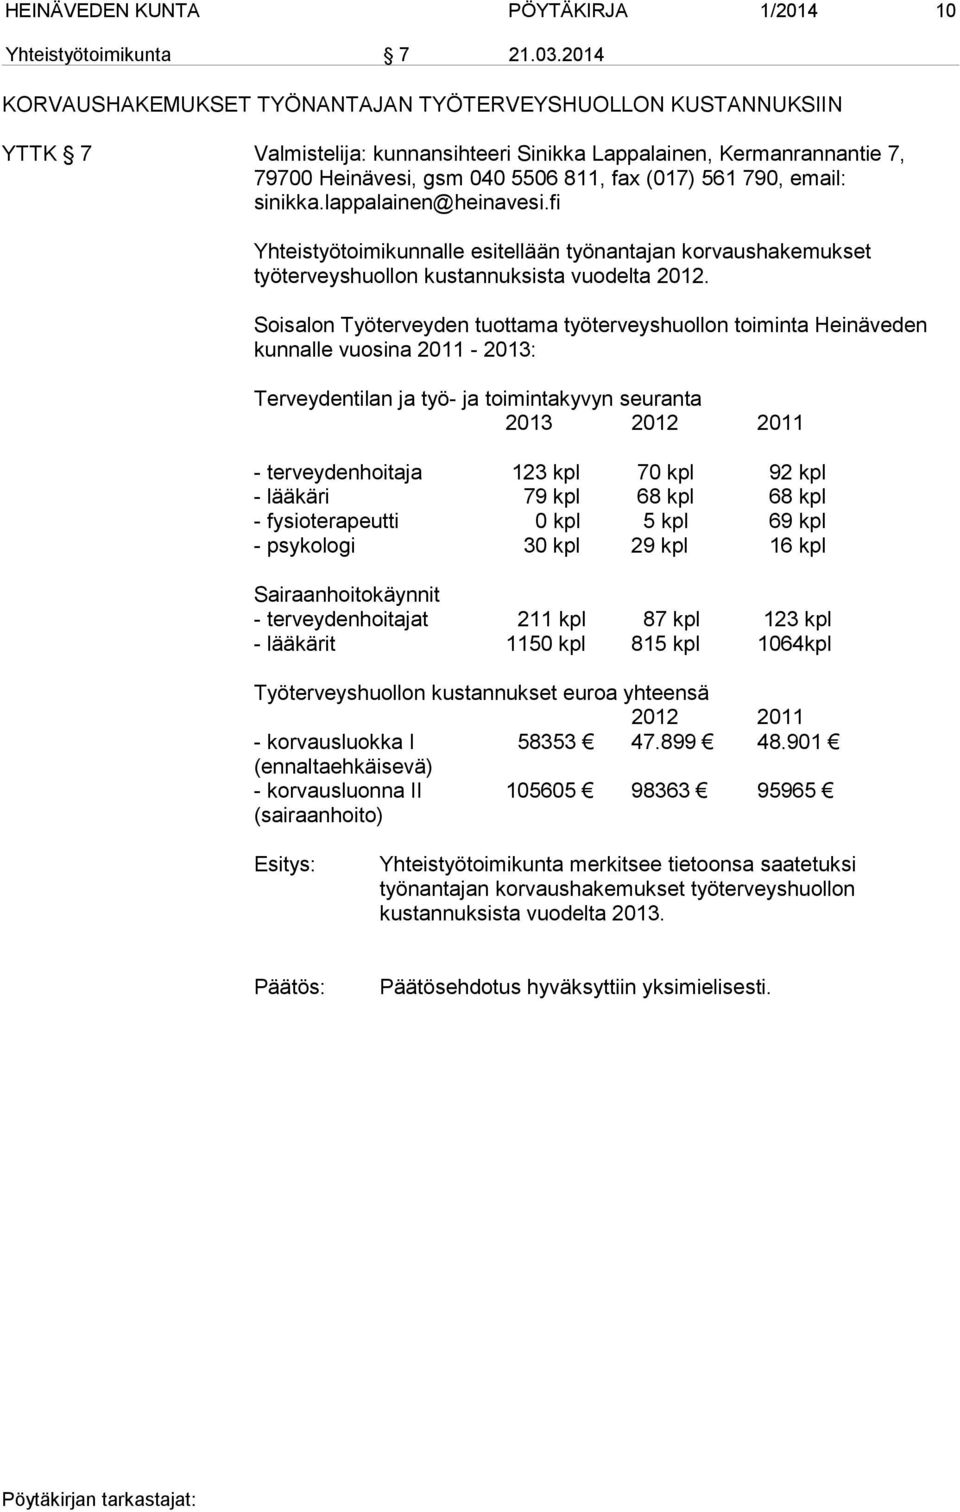 korvaushakemukset työterveyshuollon kustannuksista vuodelta 2012.